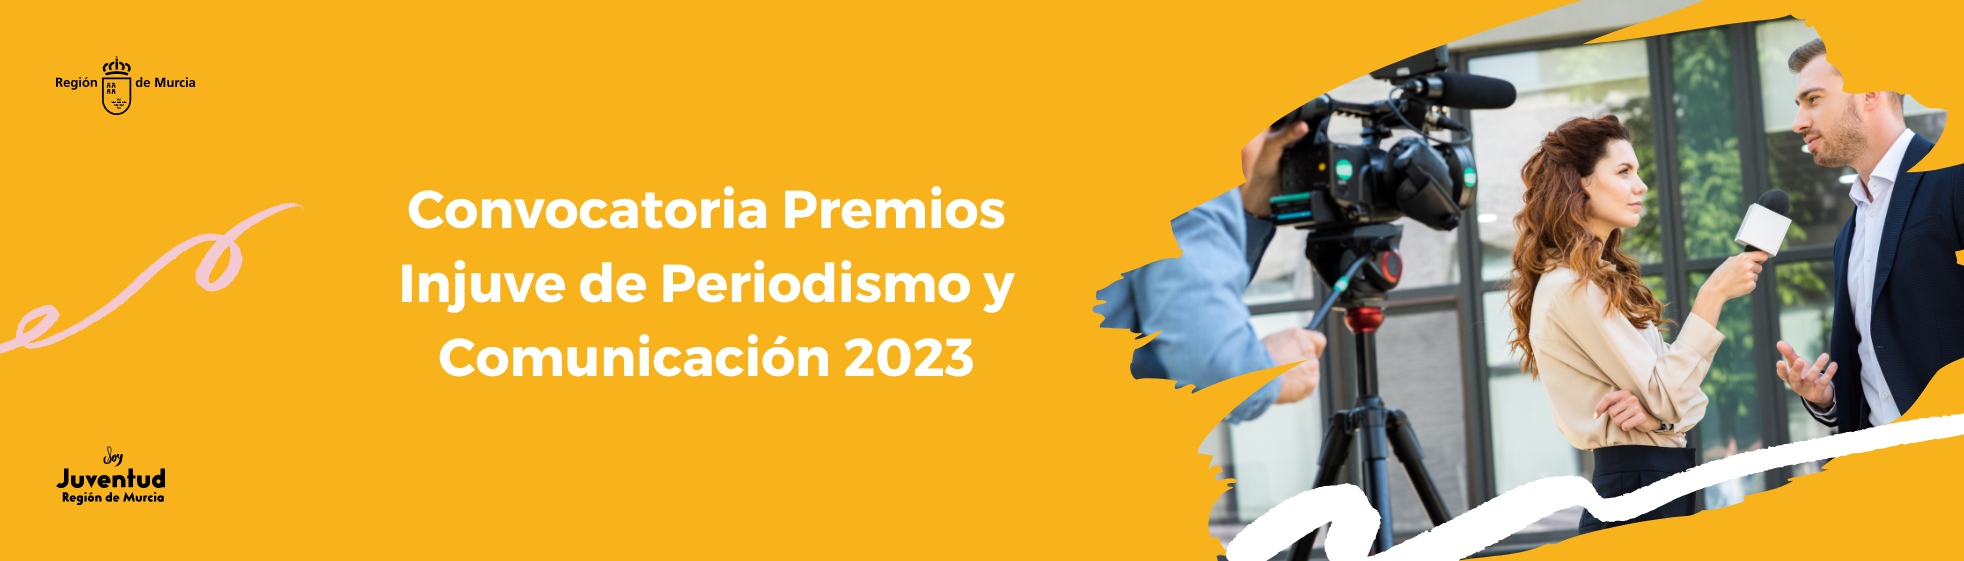 Convocatoria Premios Injuve de Periodismo y Comunicación 2023